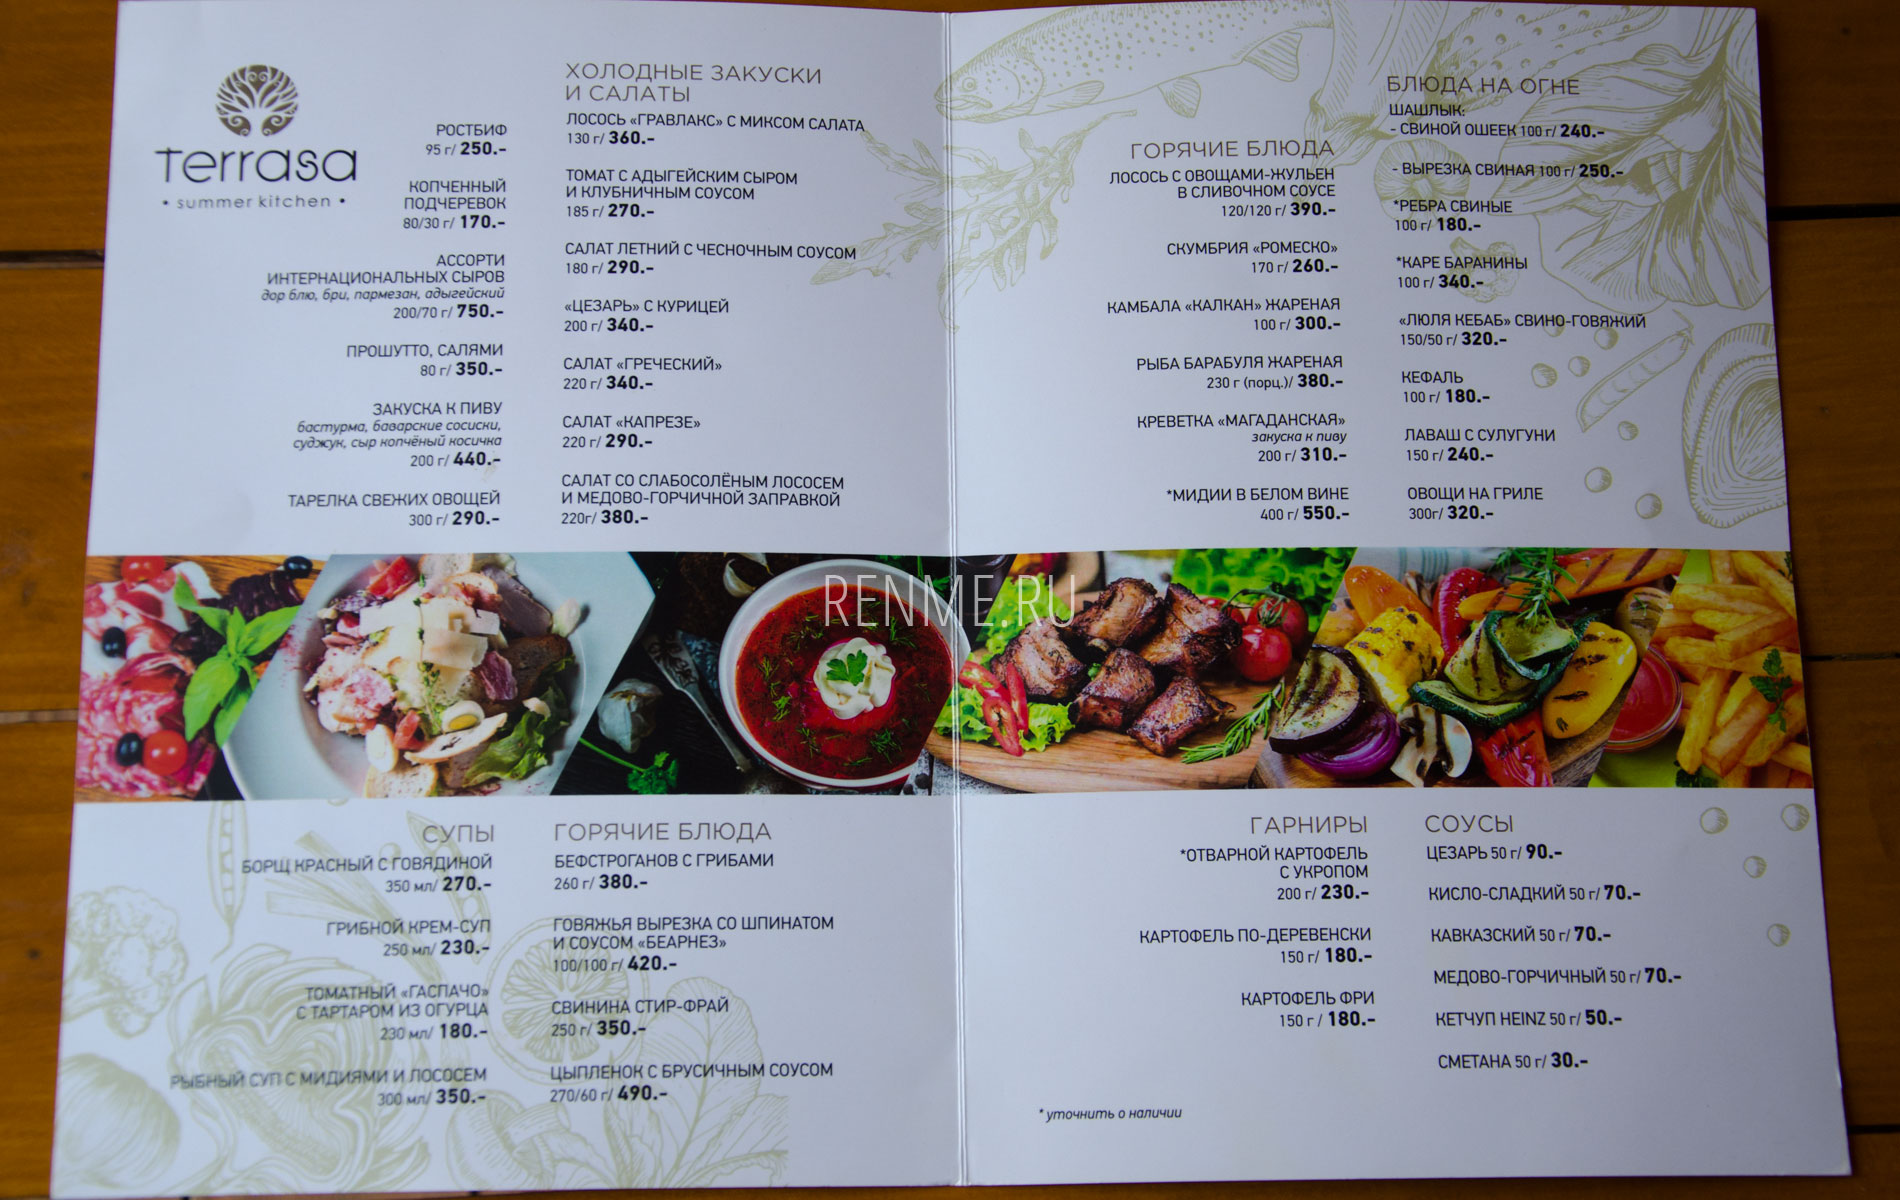 Цены в кафе "Terrasa" горячие блюда. Фото Оленевки